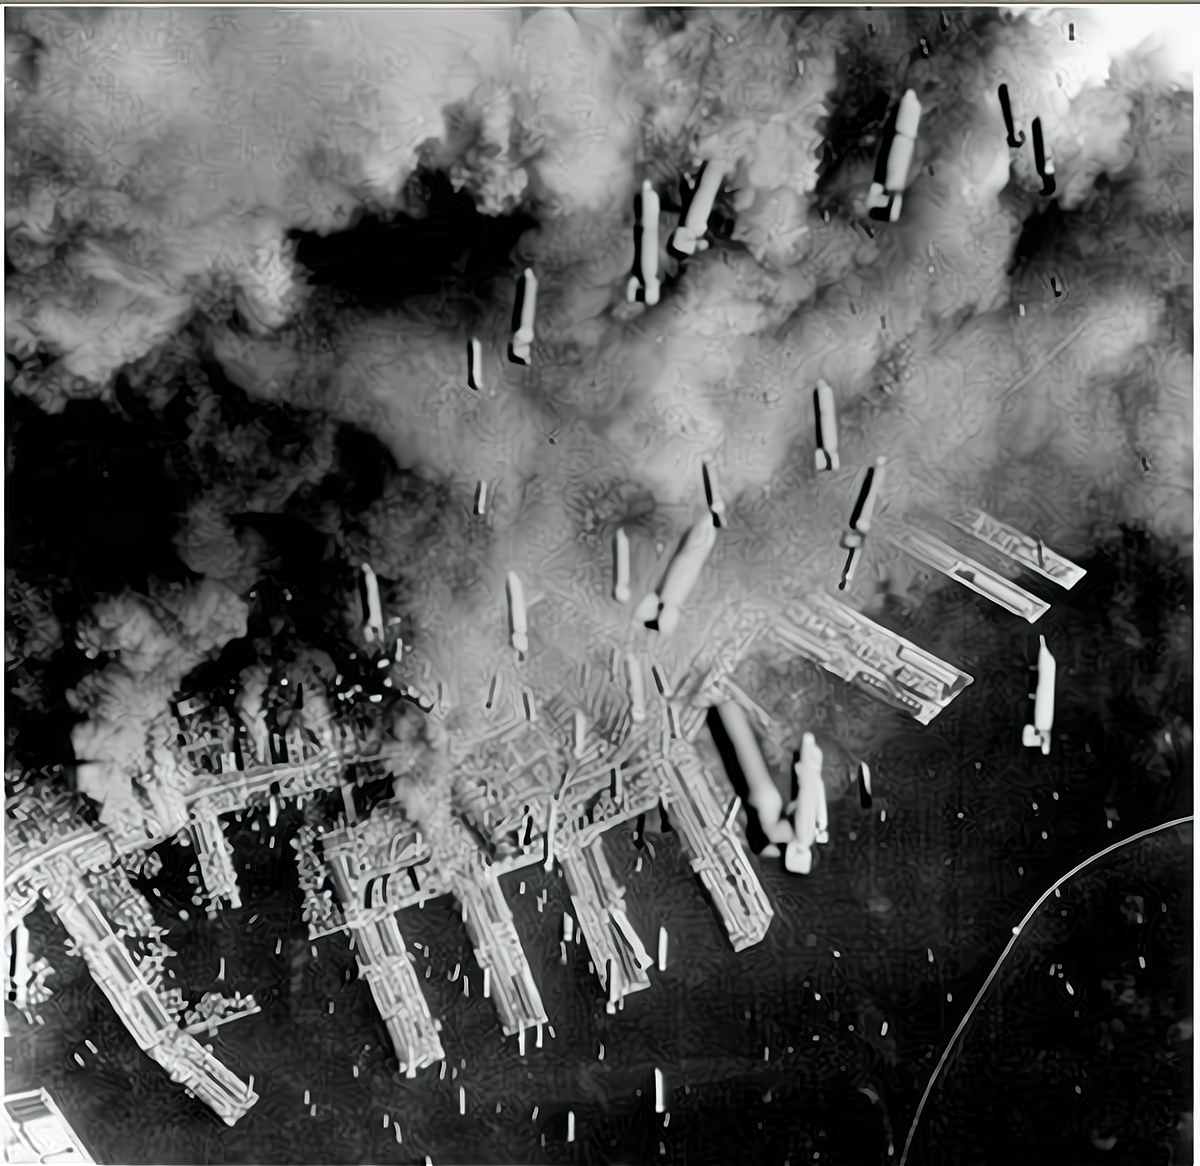 1945年东京大轰炸超50万人死亡,李梅火攻立首功,威力远超原子弹